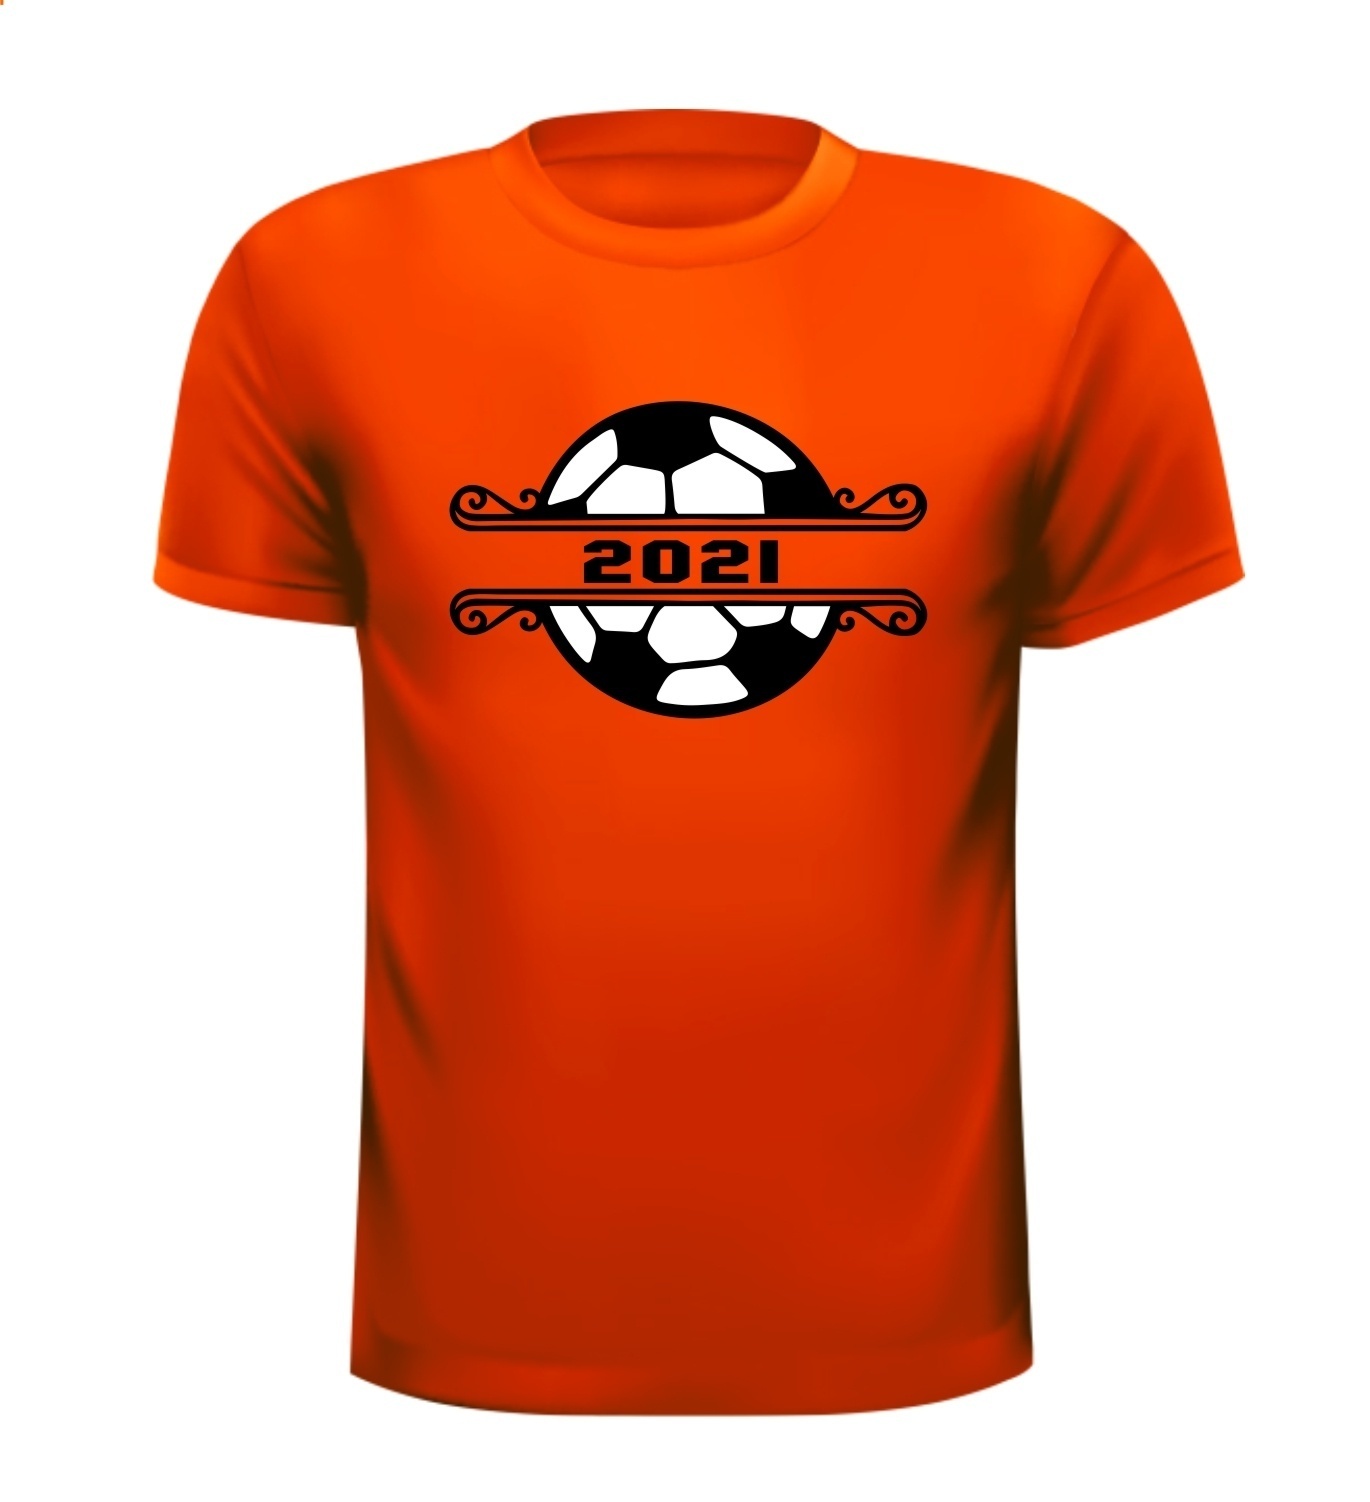 Voetbal shirtje EK 2021 oranje